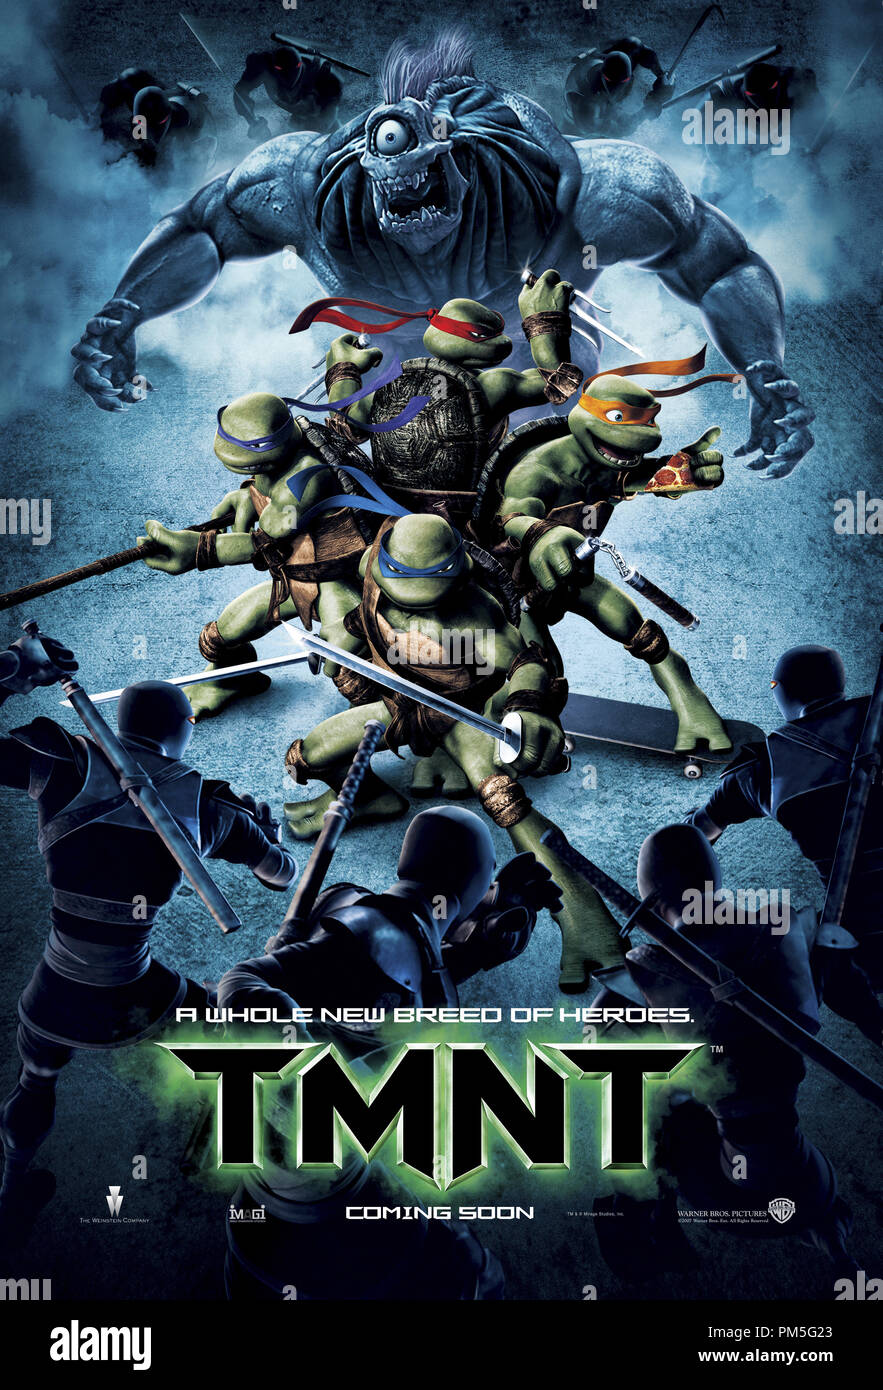 ดูหนังออนไลน์ฟรี TMNT (2007) นินจาเต่า 4 กระดองรวมพลังประจัญบาน หนังเต็มเรื่อง หนังมาสเตอร์ ดูหนังHD ดูหนังออนไลน์ ดูหนังใหม่